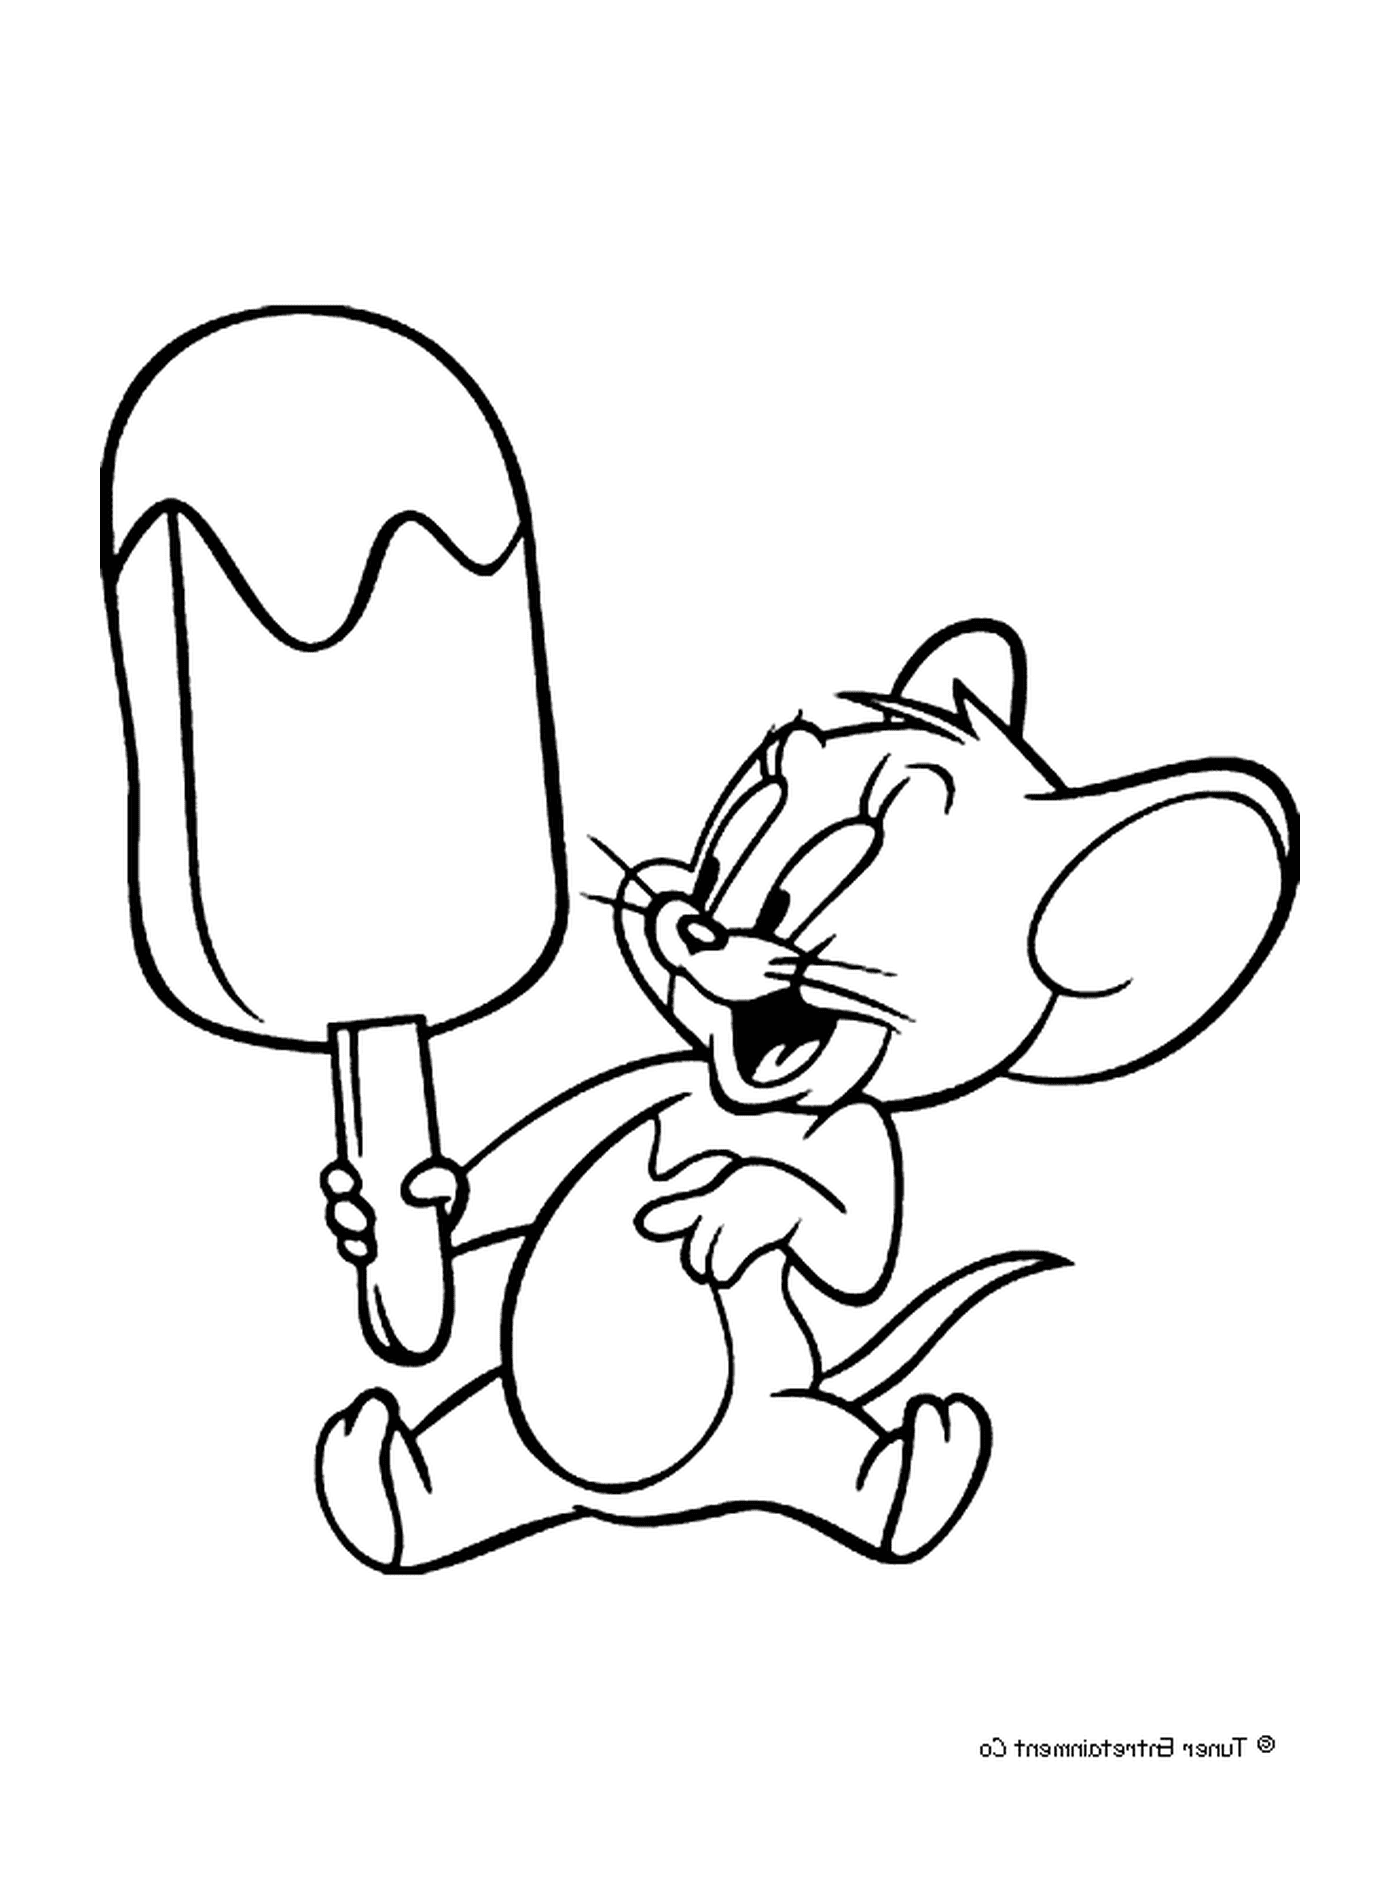 Jerry avec une glace